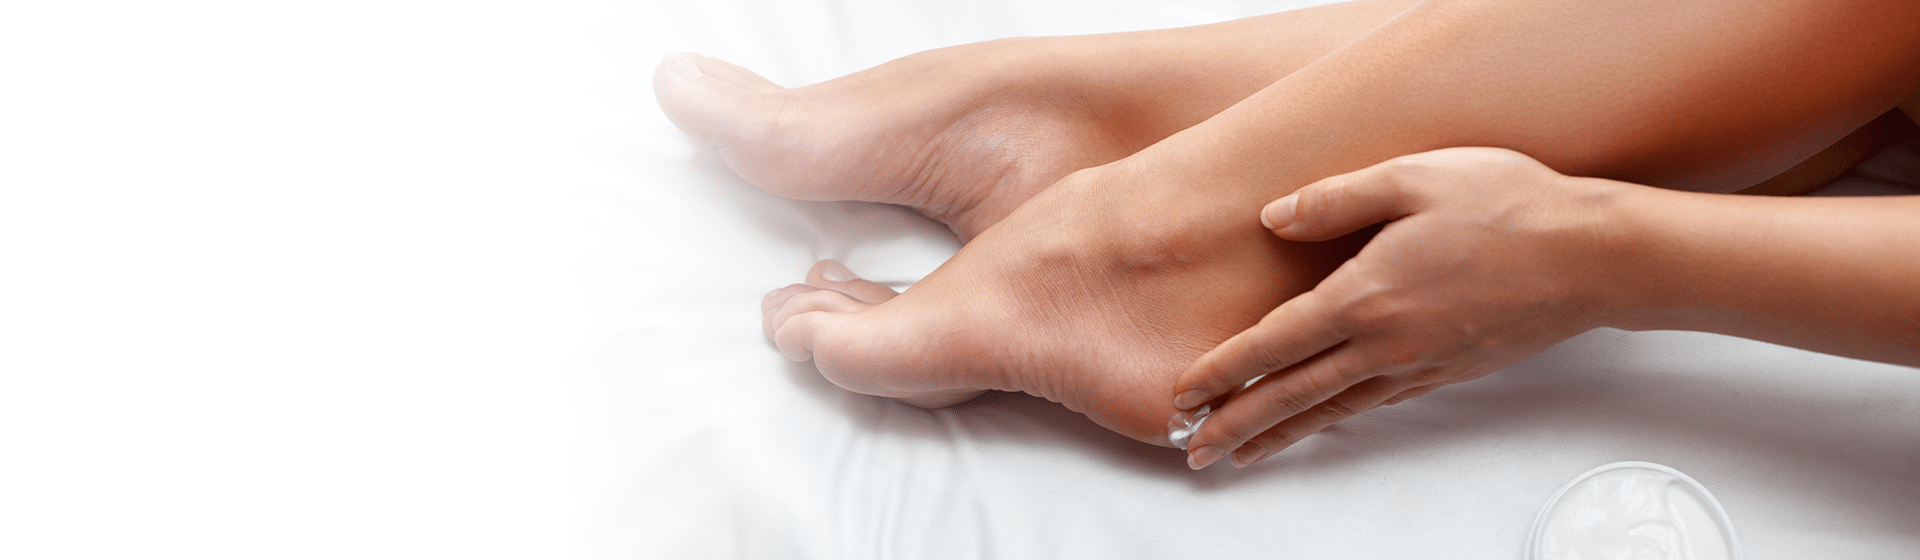 podologia terapie skóry pękające pięty rozpadliny Klinika Anti-Aging INVICTA